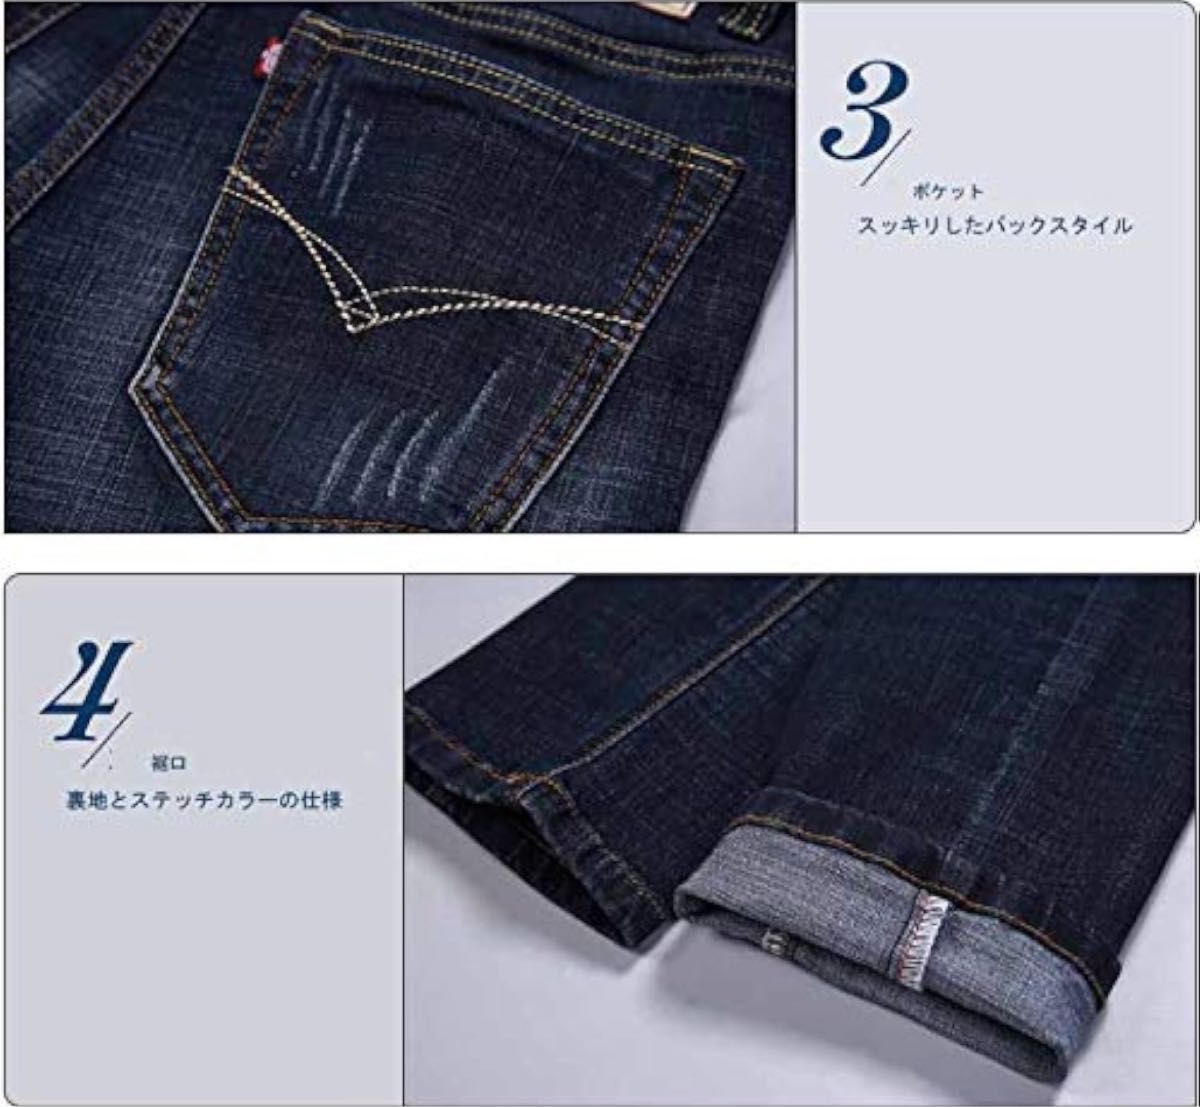 [Hiloyaya] メンズ デニムパンツ ストレッチ ダメージ加工 ジーパン アメカジ メンズジーンズ ズボン 紳士 36サイズ